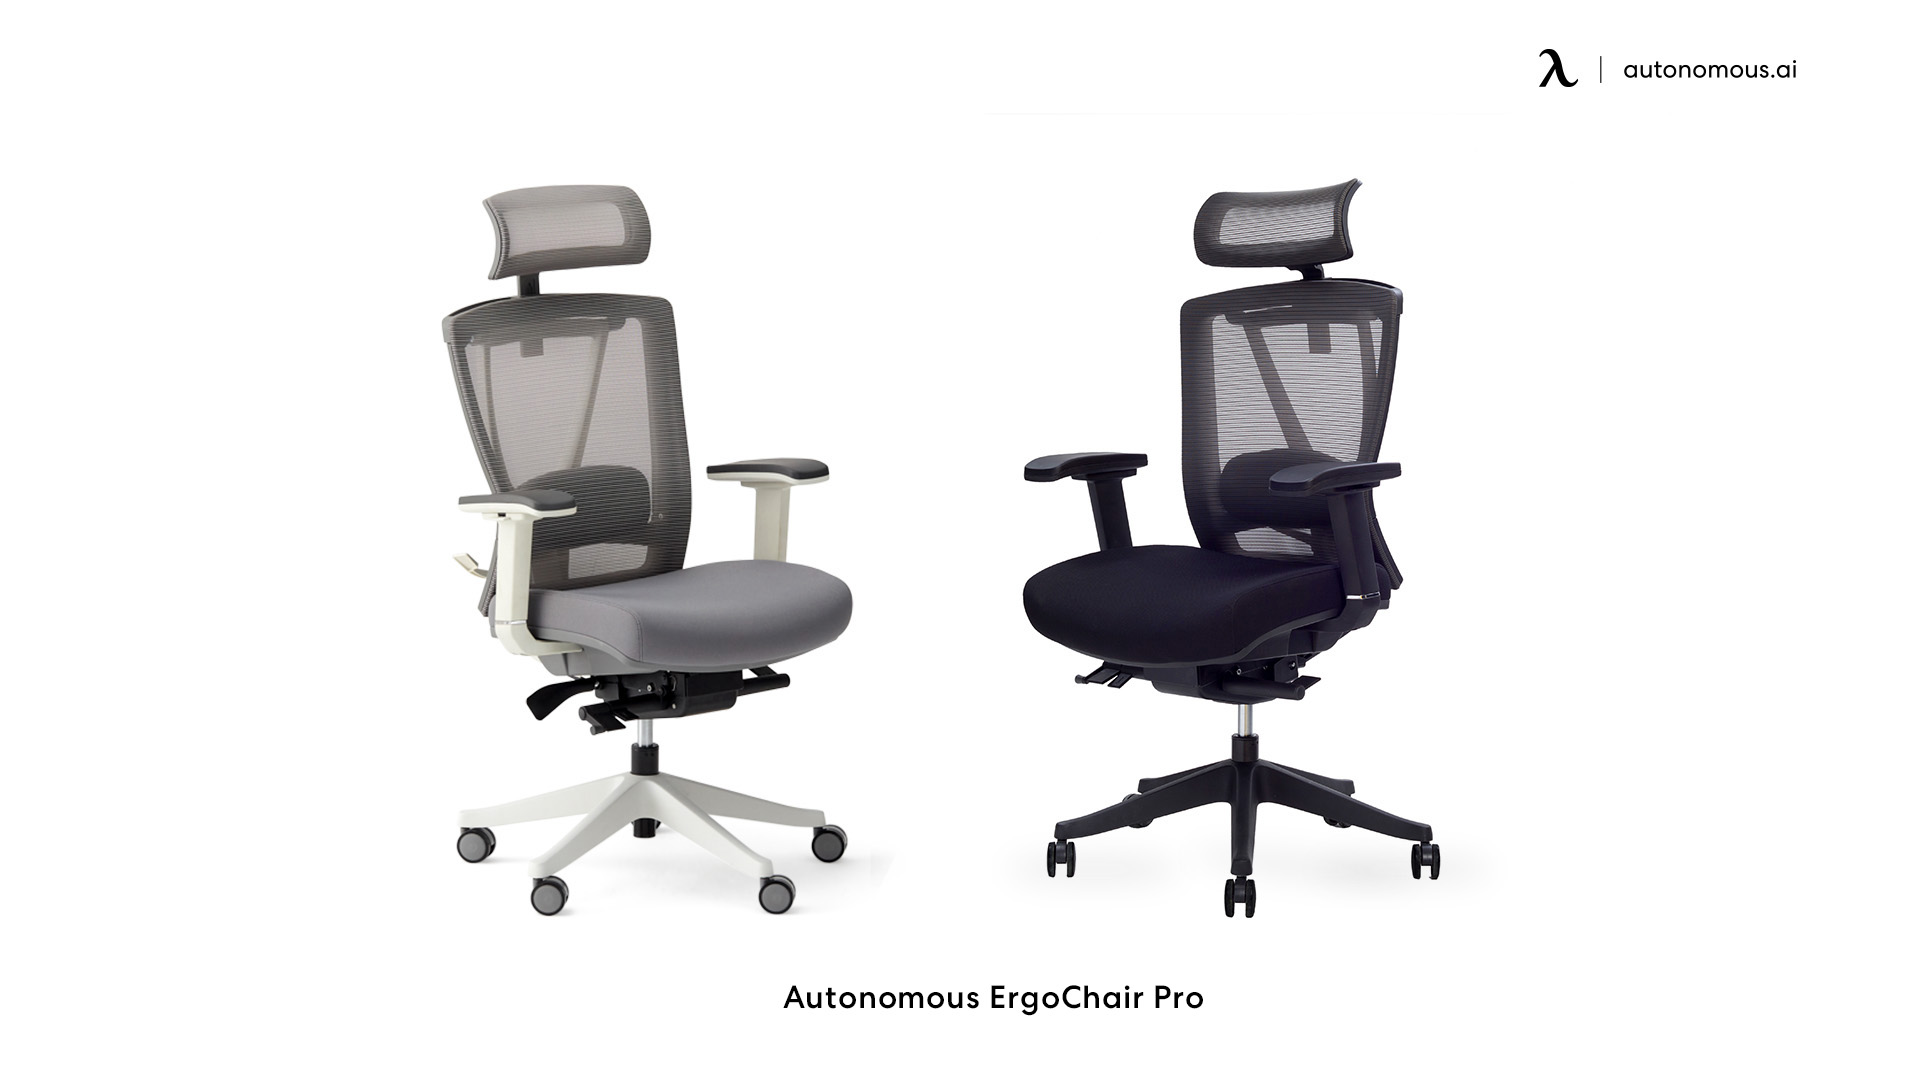 ErgoChair Pro adjustable height chair